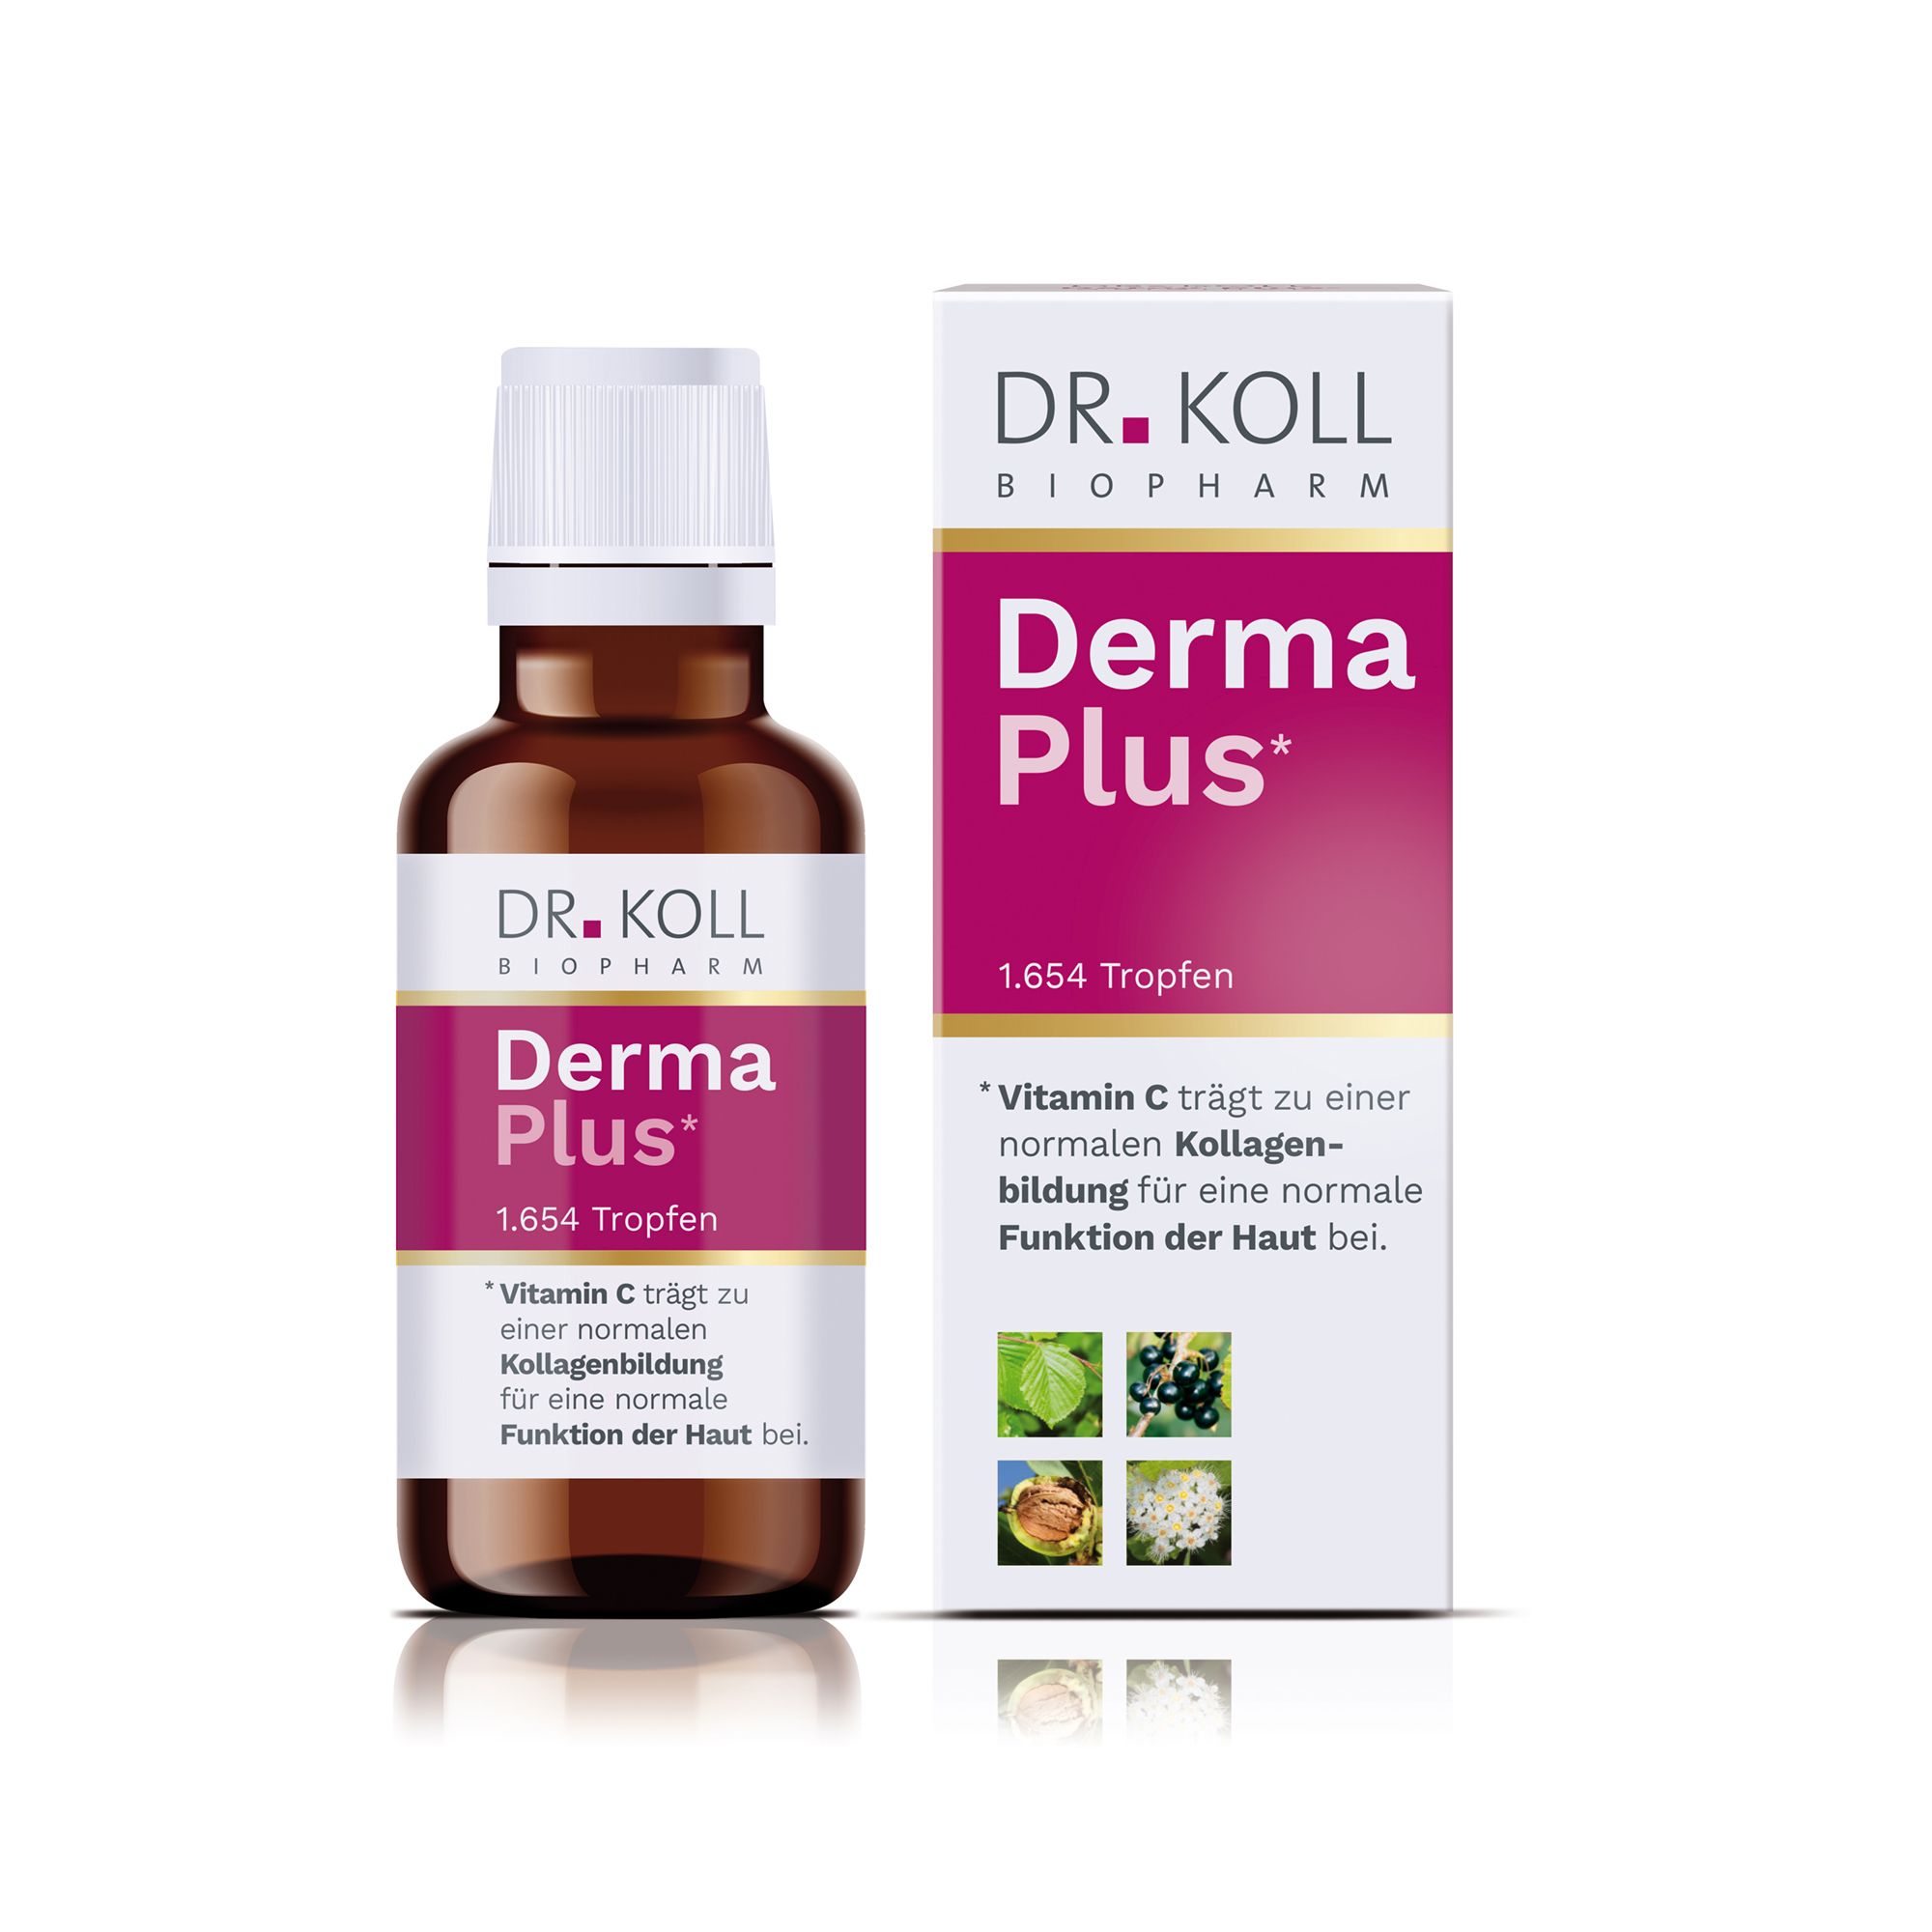 DR. Koll Derma Plus®